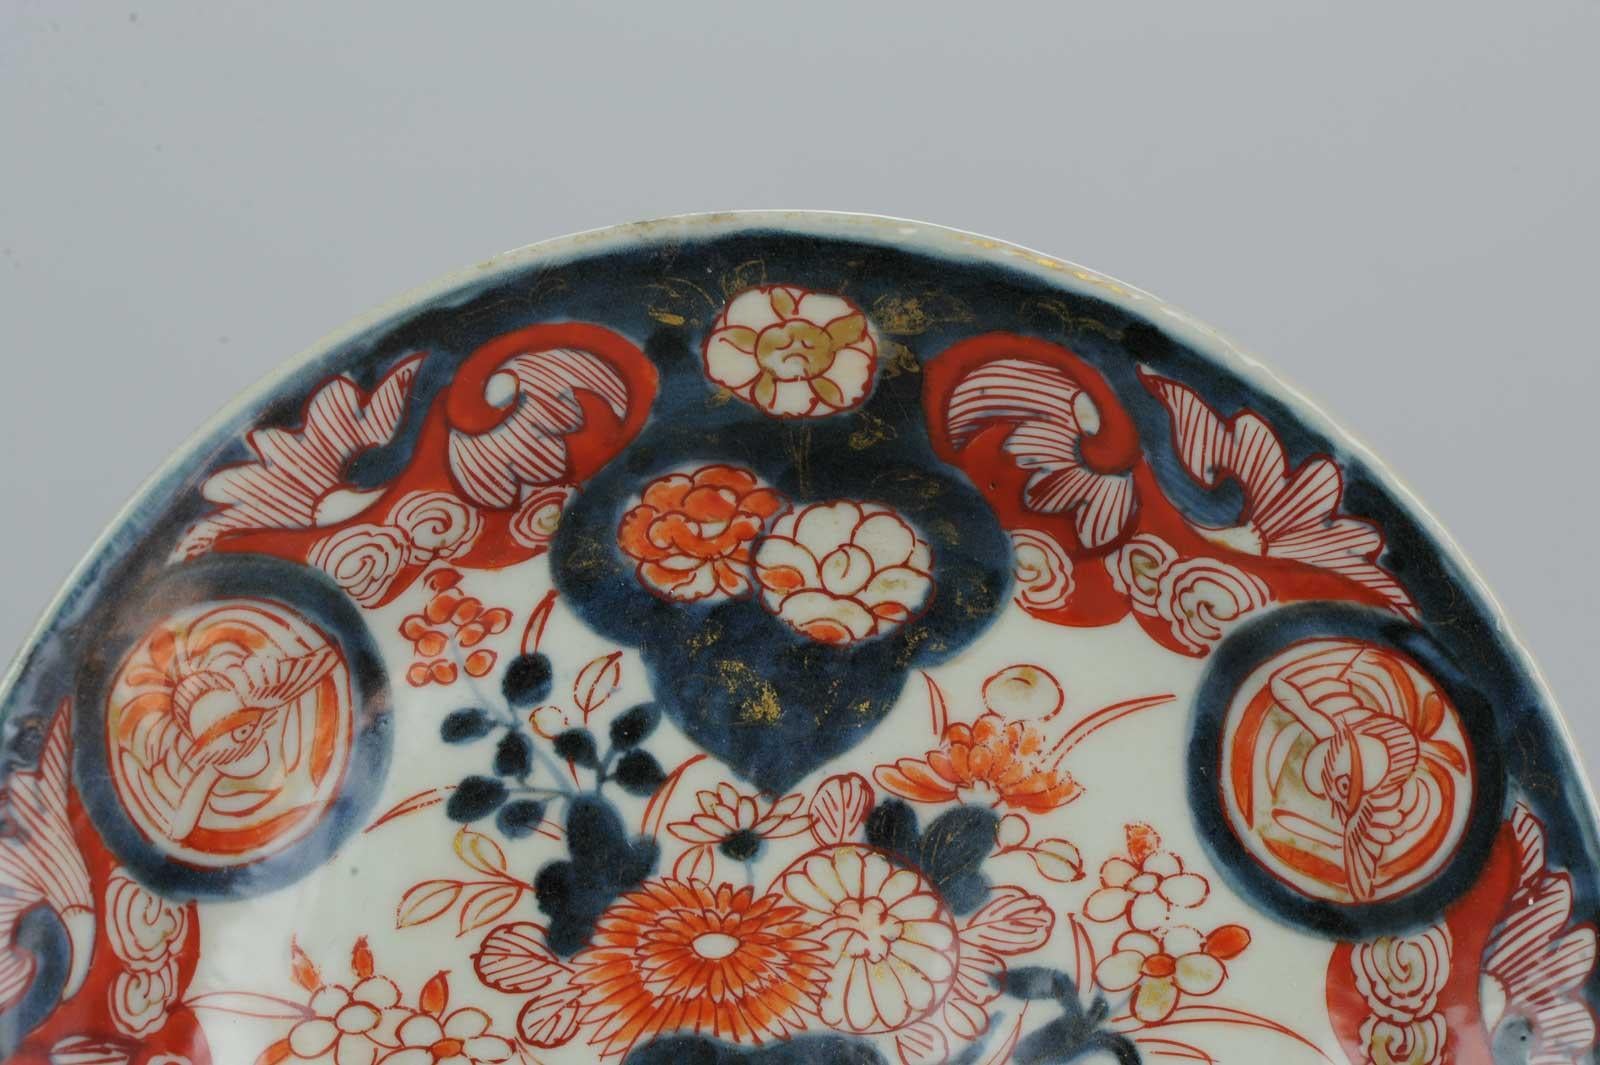 Antique circa 1700 Japanese Imari Porcelain Plates Arita Edo Flowers 6